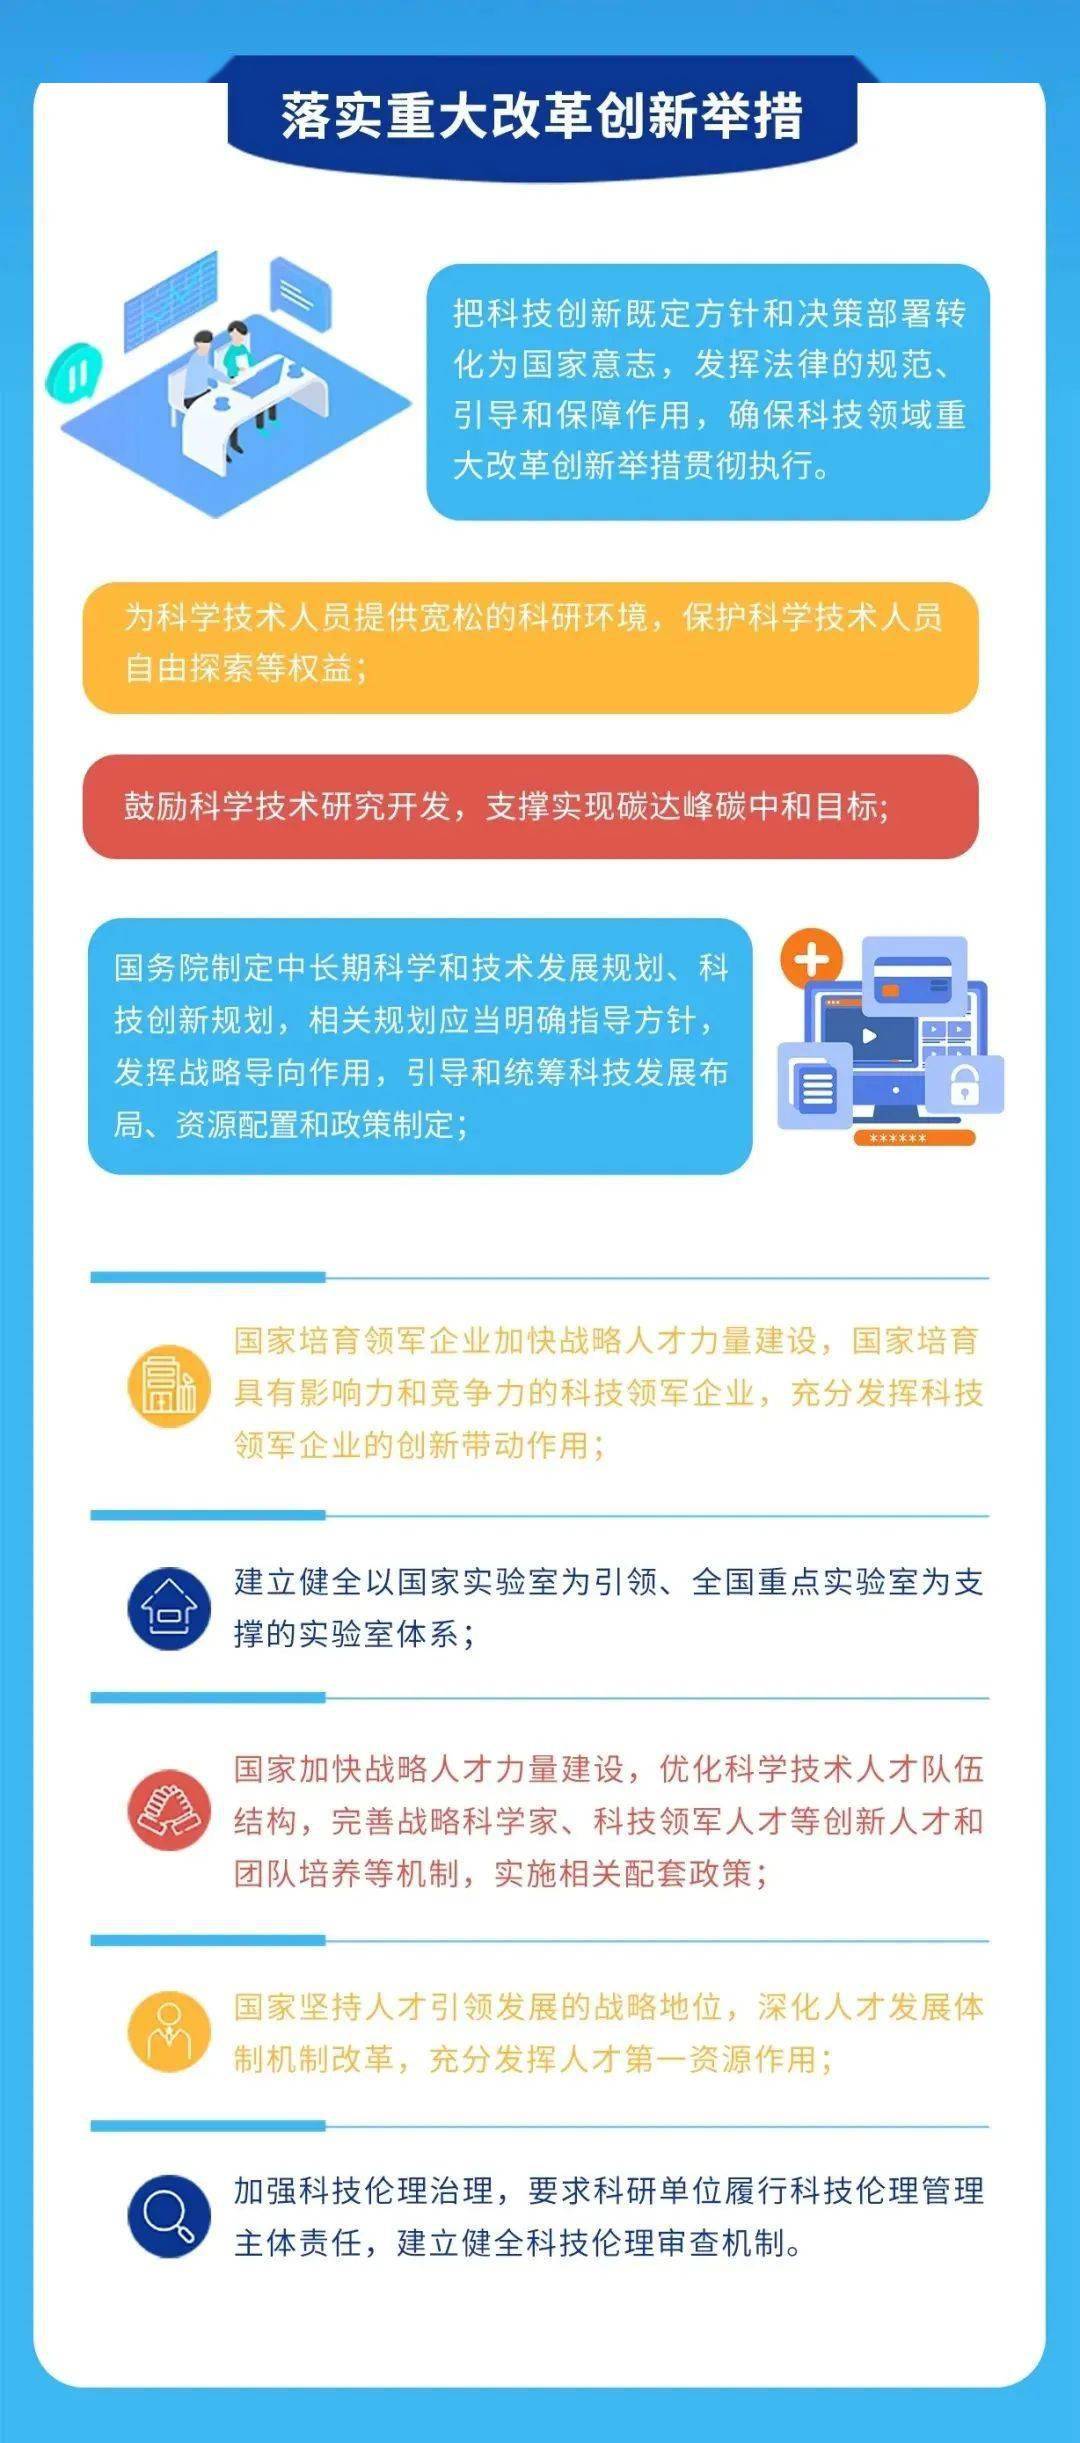 普法宣传 | 一图读懂《中华人民共和国科学技术进步法》